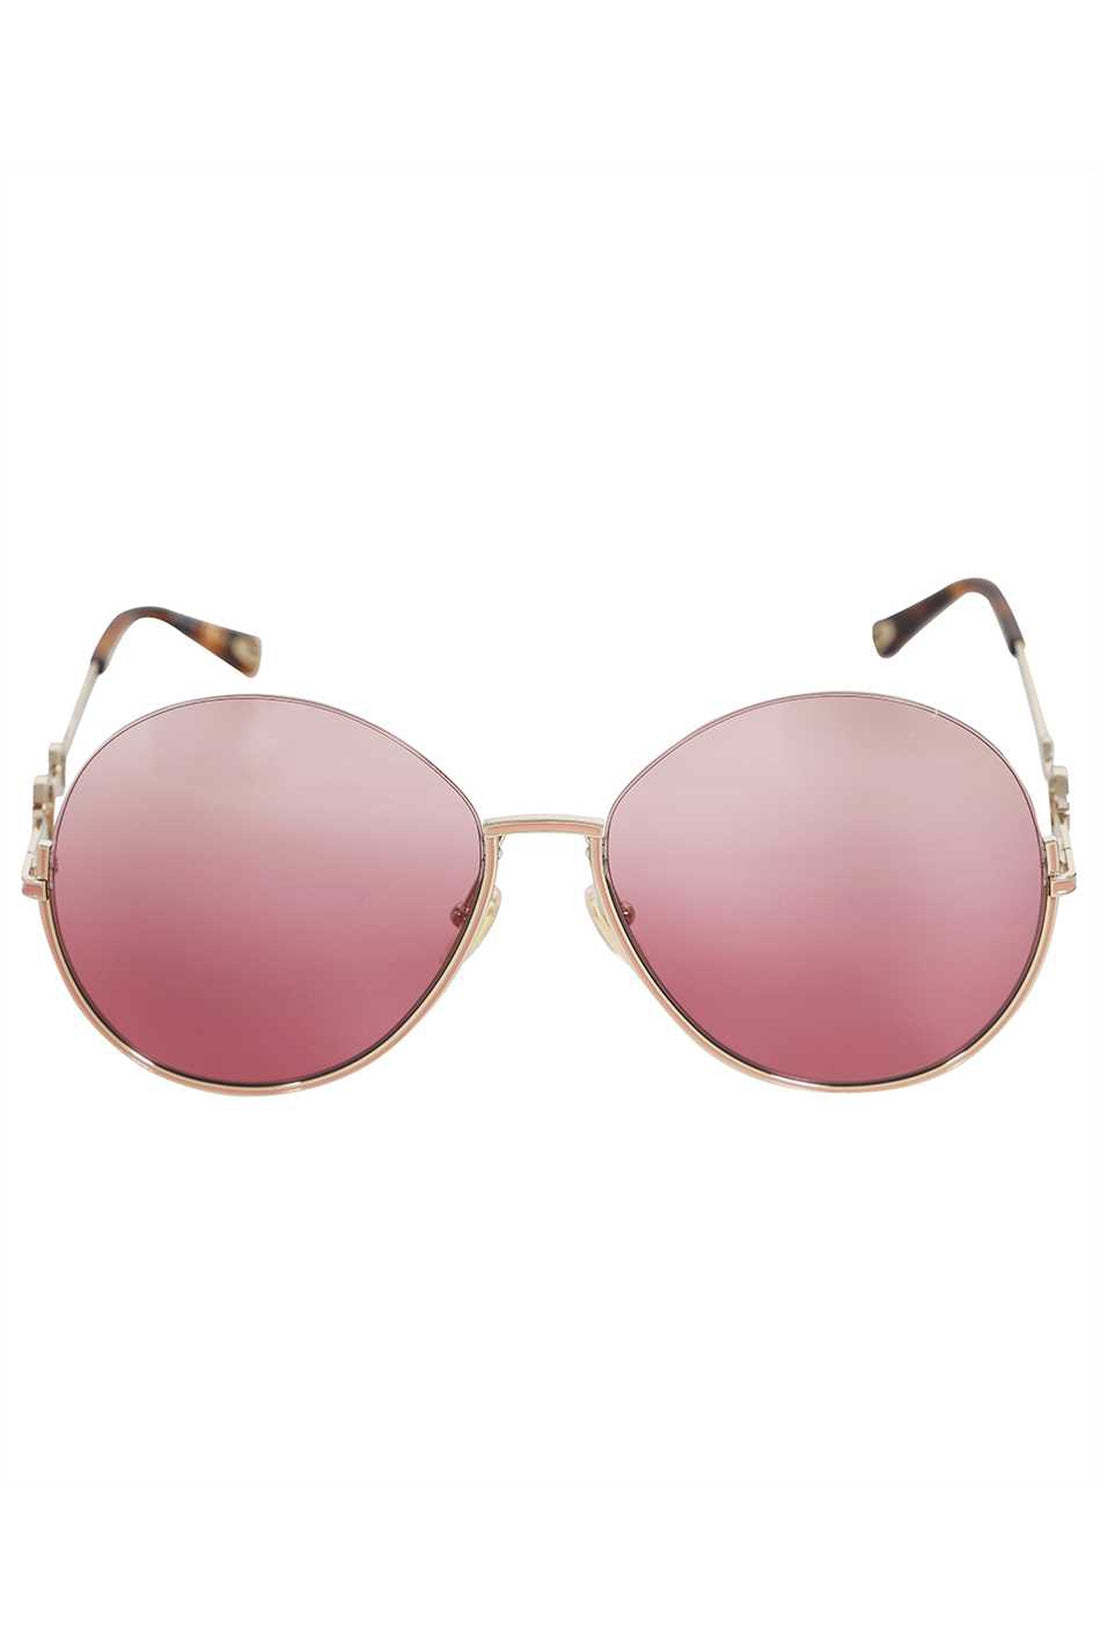 Chloé-OUTLET-SALE-Round frame sunglasses-ARCHIVIST